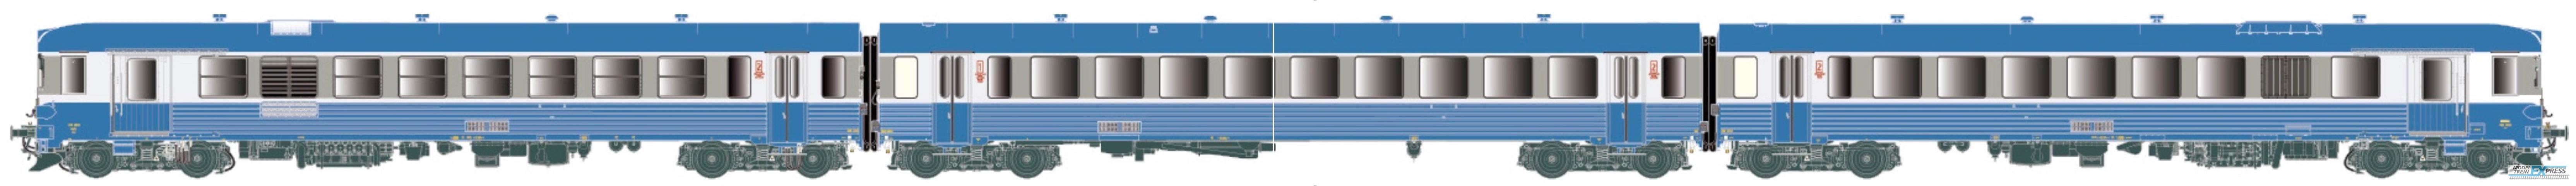 LS Models 11027 XBD4901-26 + XRAB8901-13, dieseltreinstel, 3-delig, met baanruimer / Ep. IV / SNCF / HO / DC / 1 P.